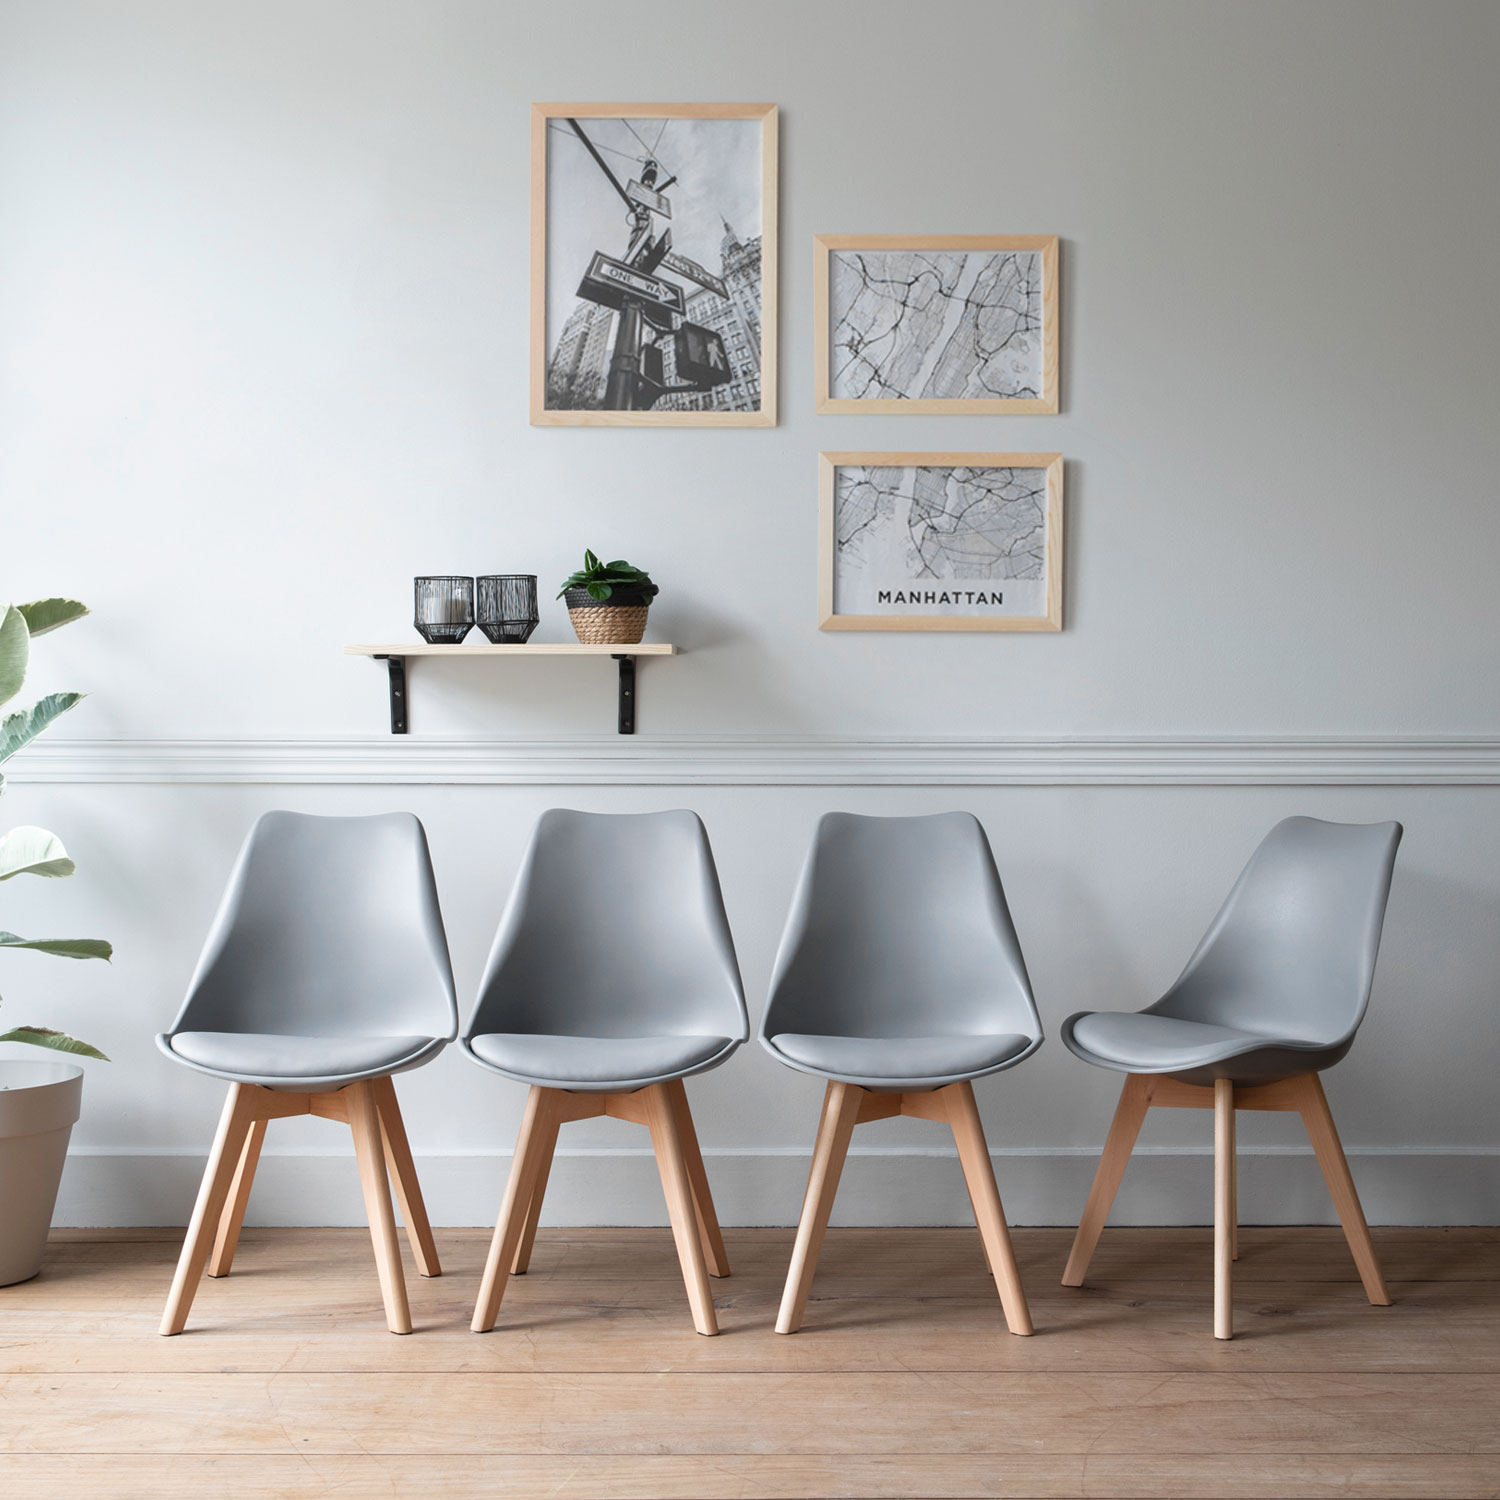 Lote de 4 sillas escandinavas NORA color gris con cojín